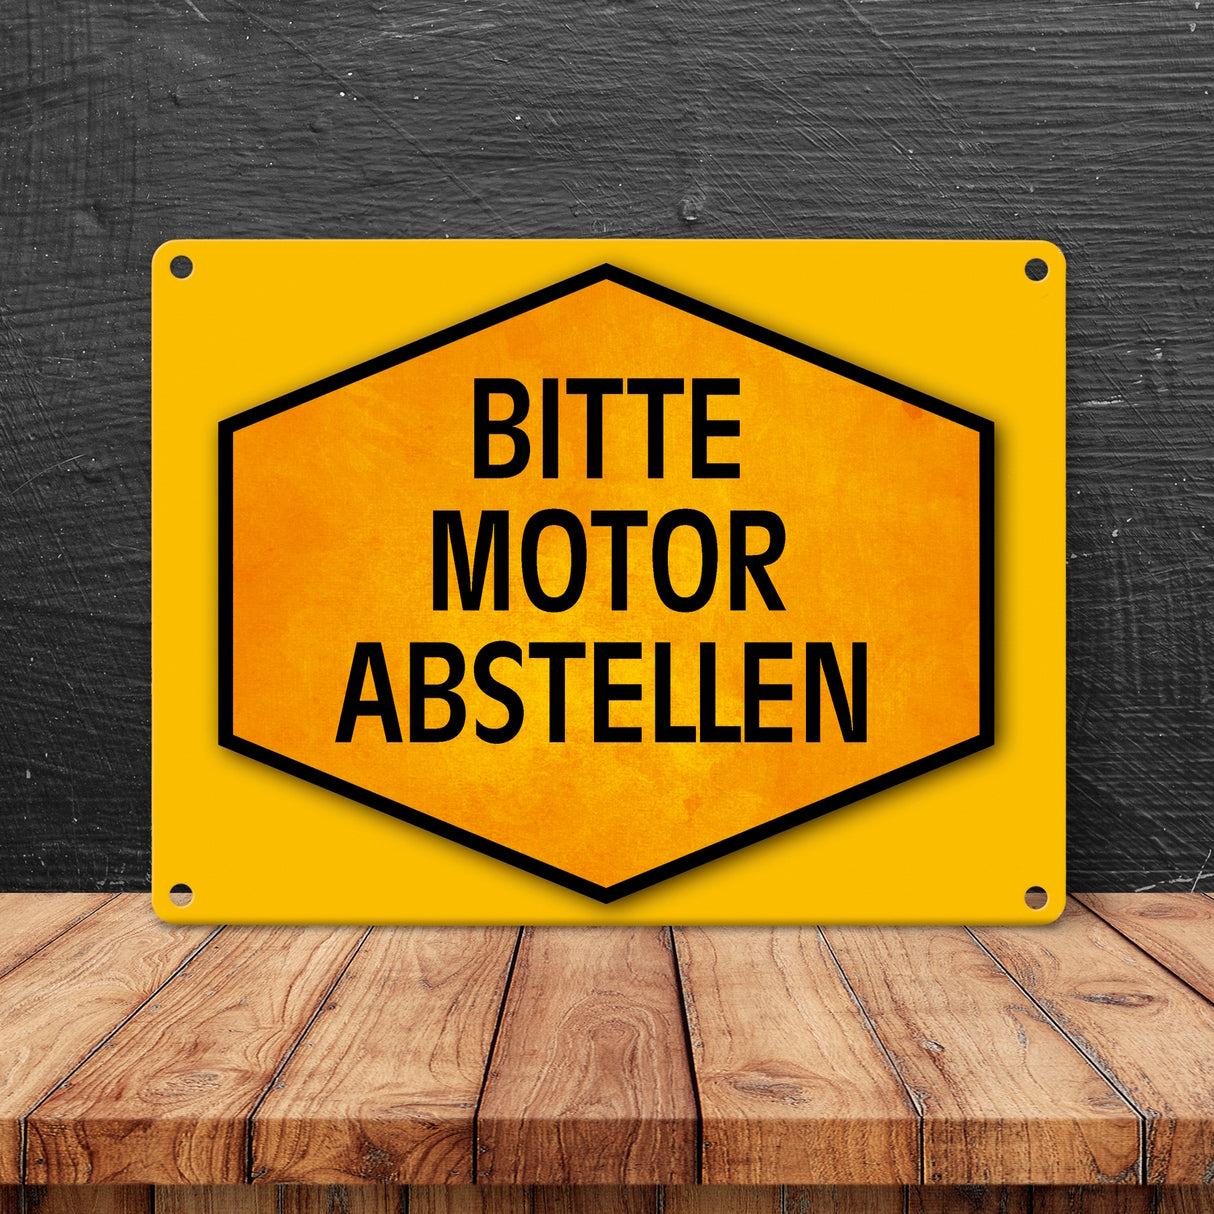 Bitte Motor abstellen Warn- und Hinweisschild in Gelb und Schwarz